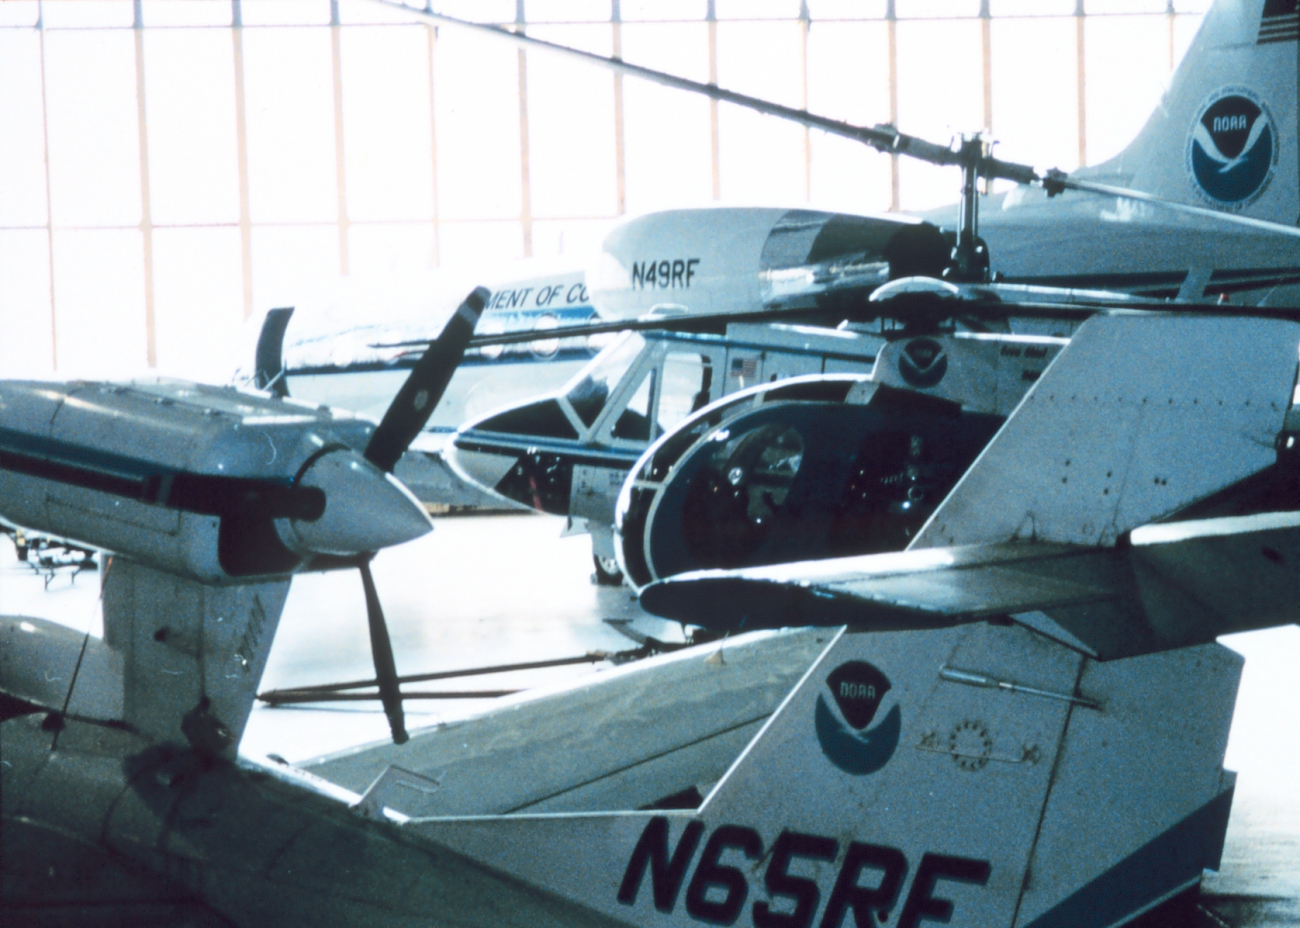 A menagerie of NOAA aircraft at the NOAA hangar at MacDill AFB